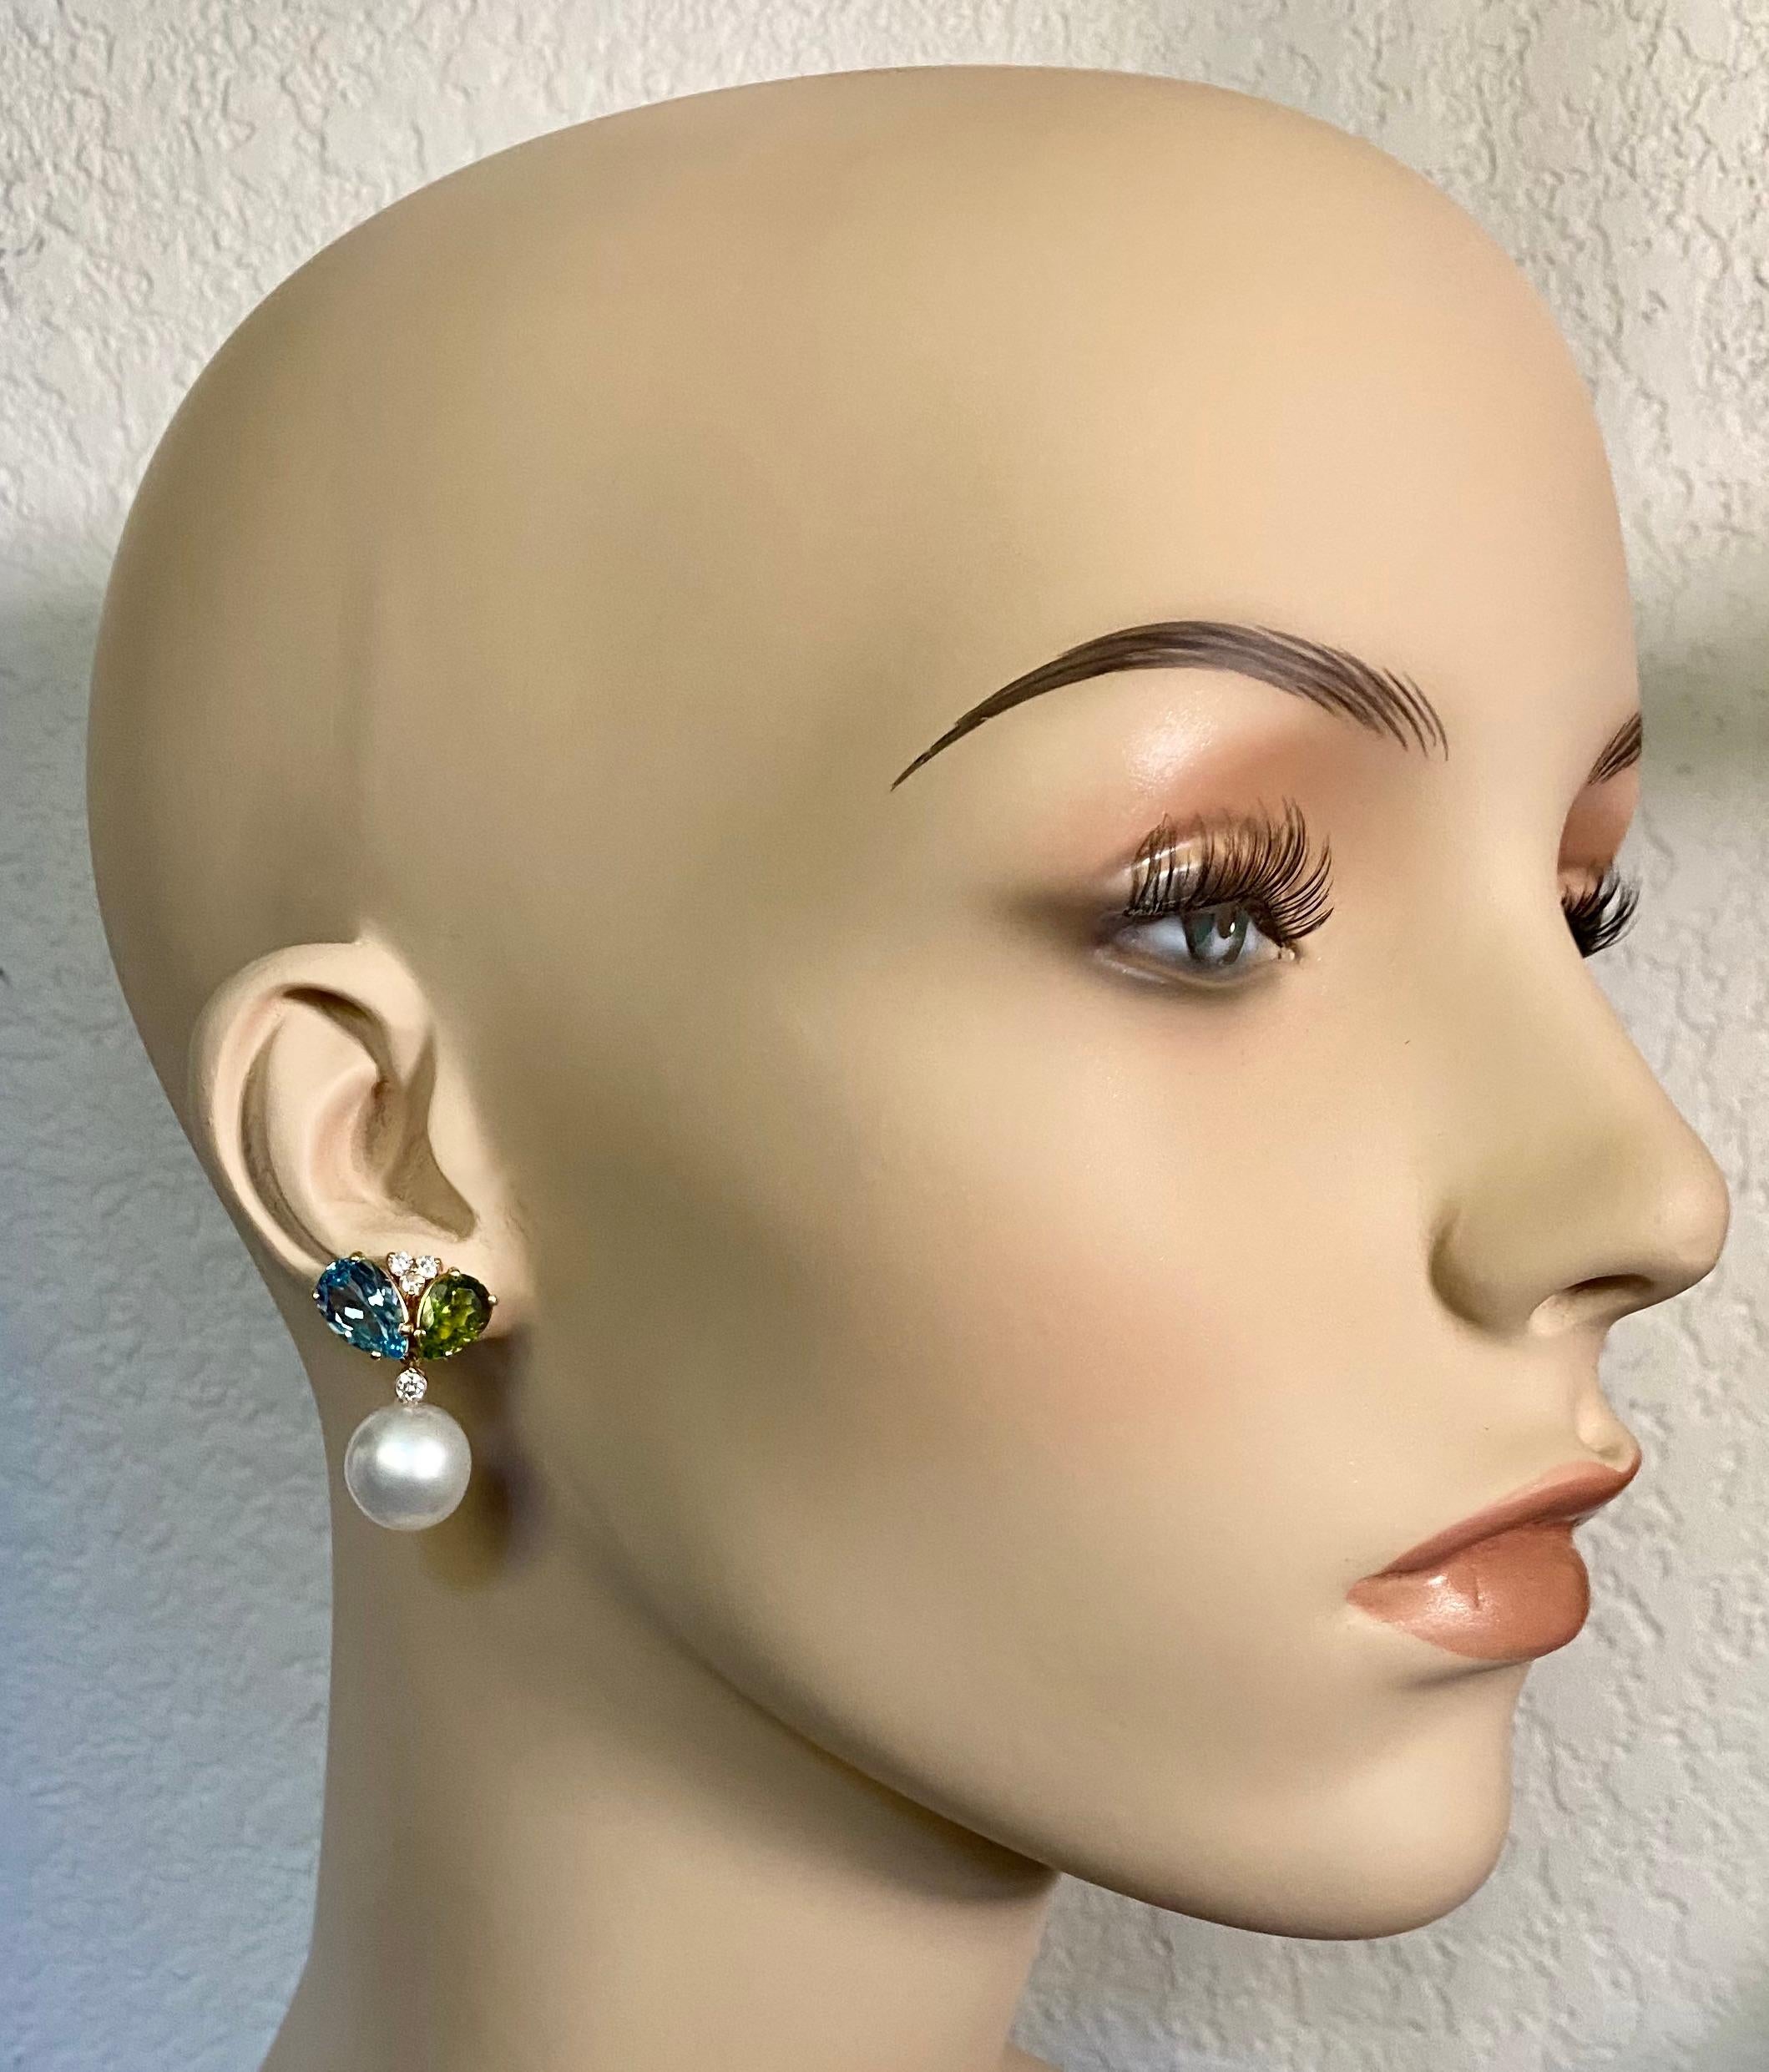 Blauer Topas und Peridot werden mit den Paspaley-Südseeperlen zu diesen eleganten Ohrhängern kombiniert.  Beide Edelsteine sind birnenförmig mit intensiver Farbsättigung und sind gut geschliffen und poliert.  Sie werden durch Büschel weißer